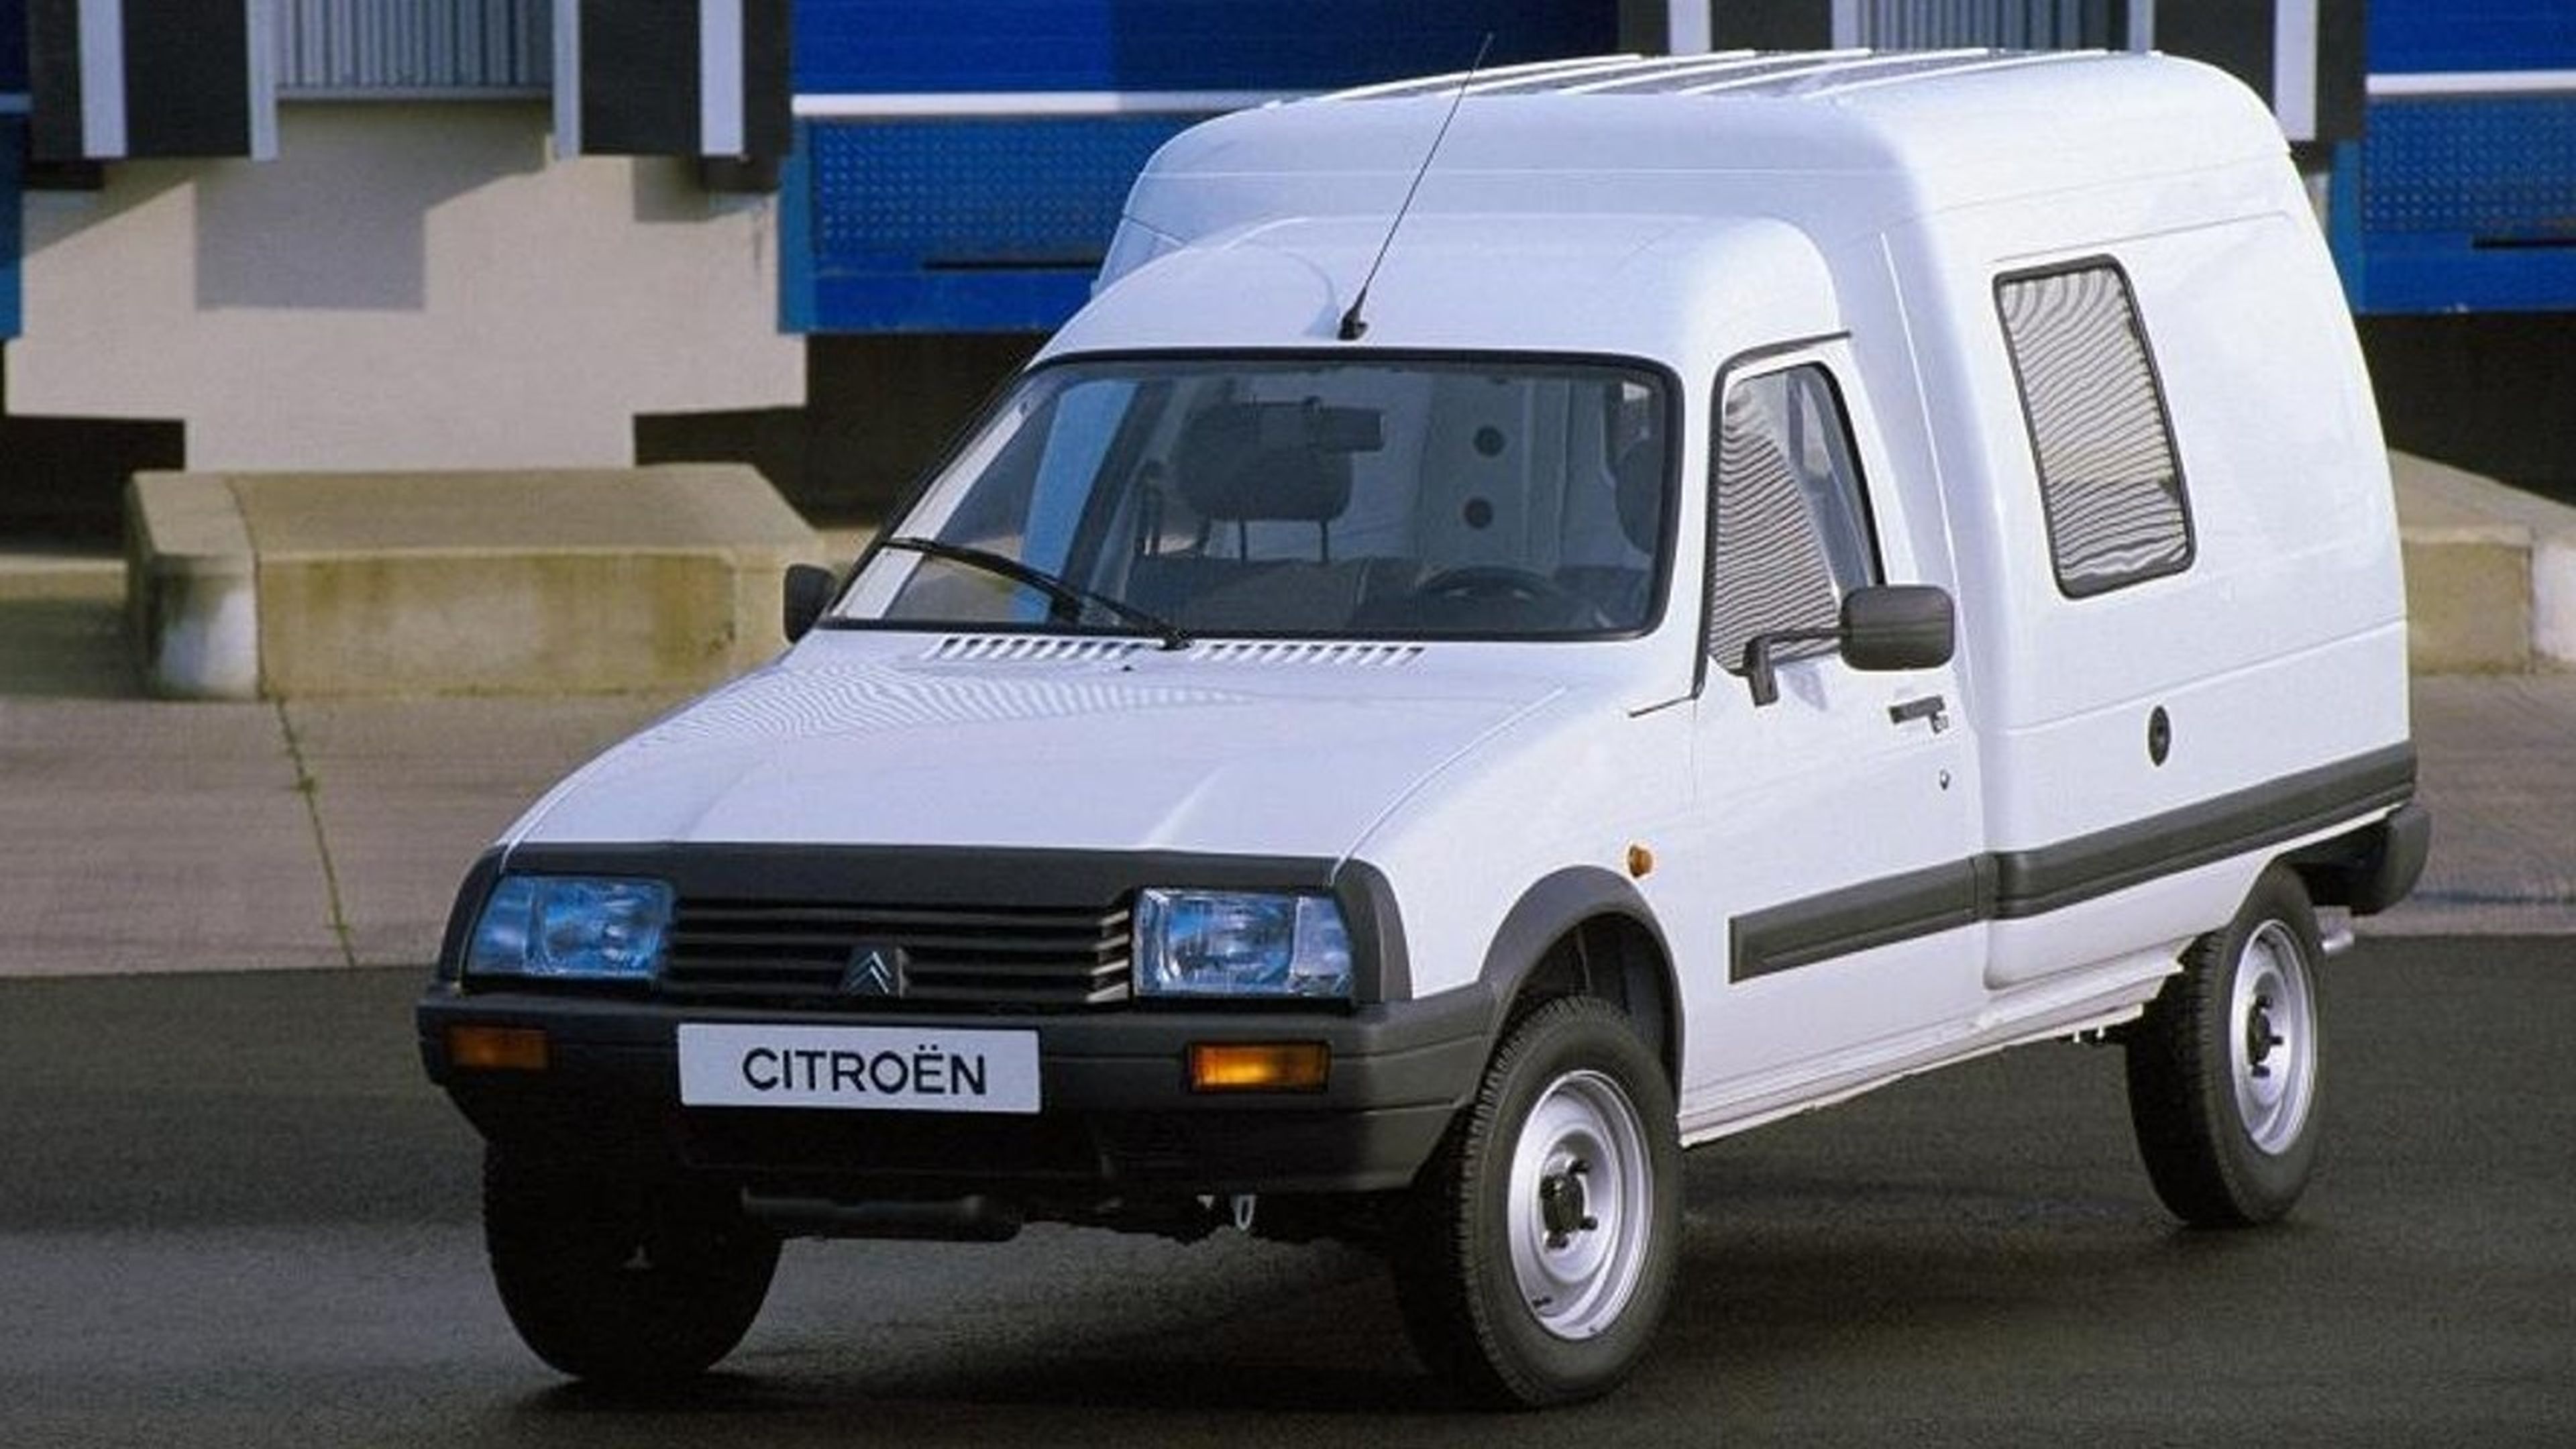 La increíble historia del Citroën Saxo eléctrico